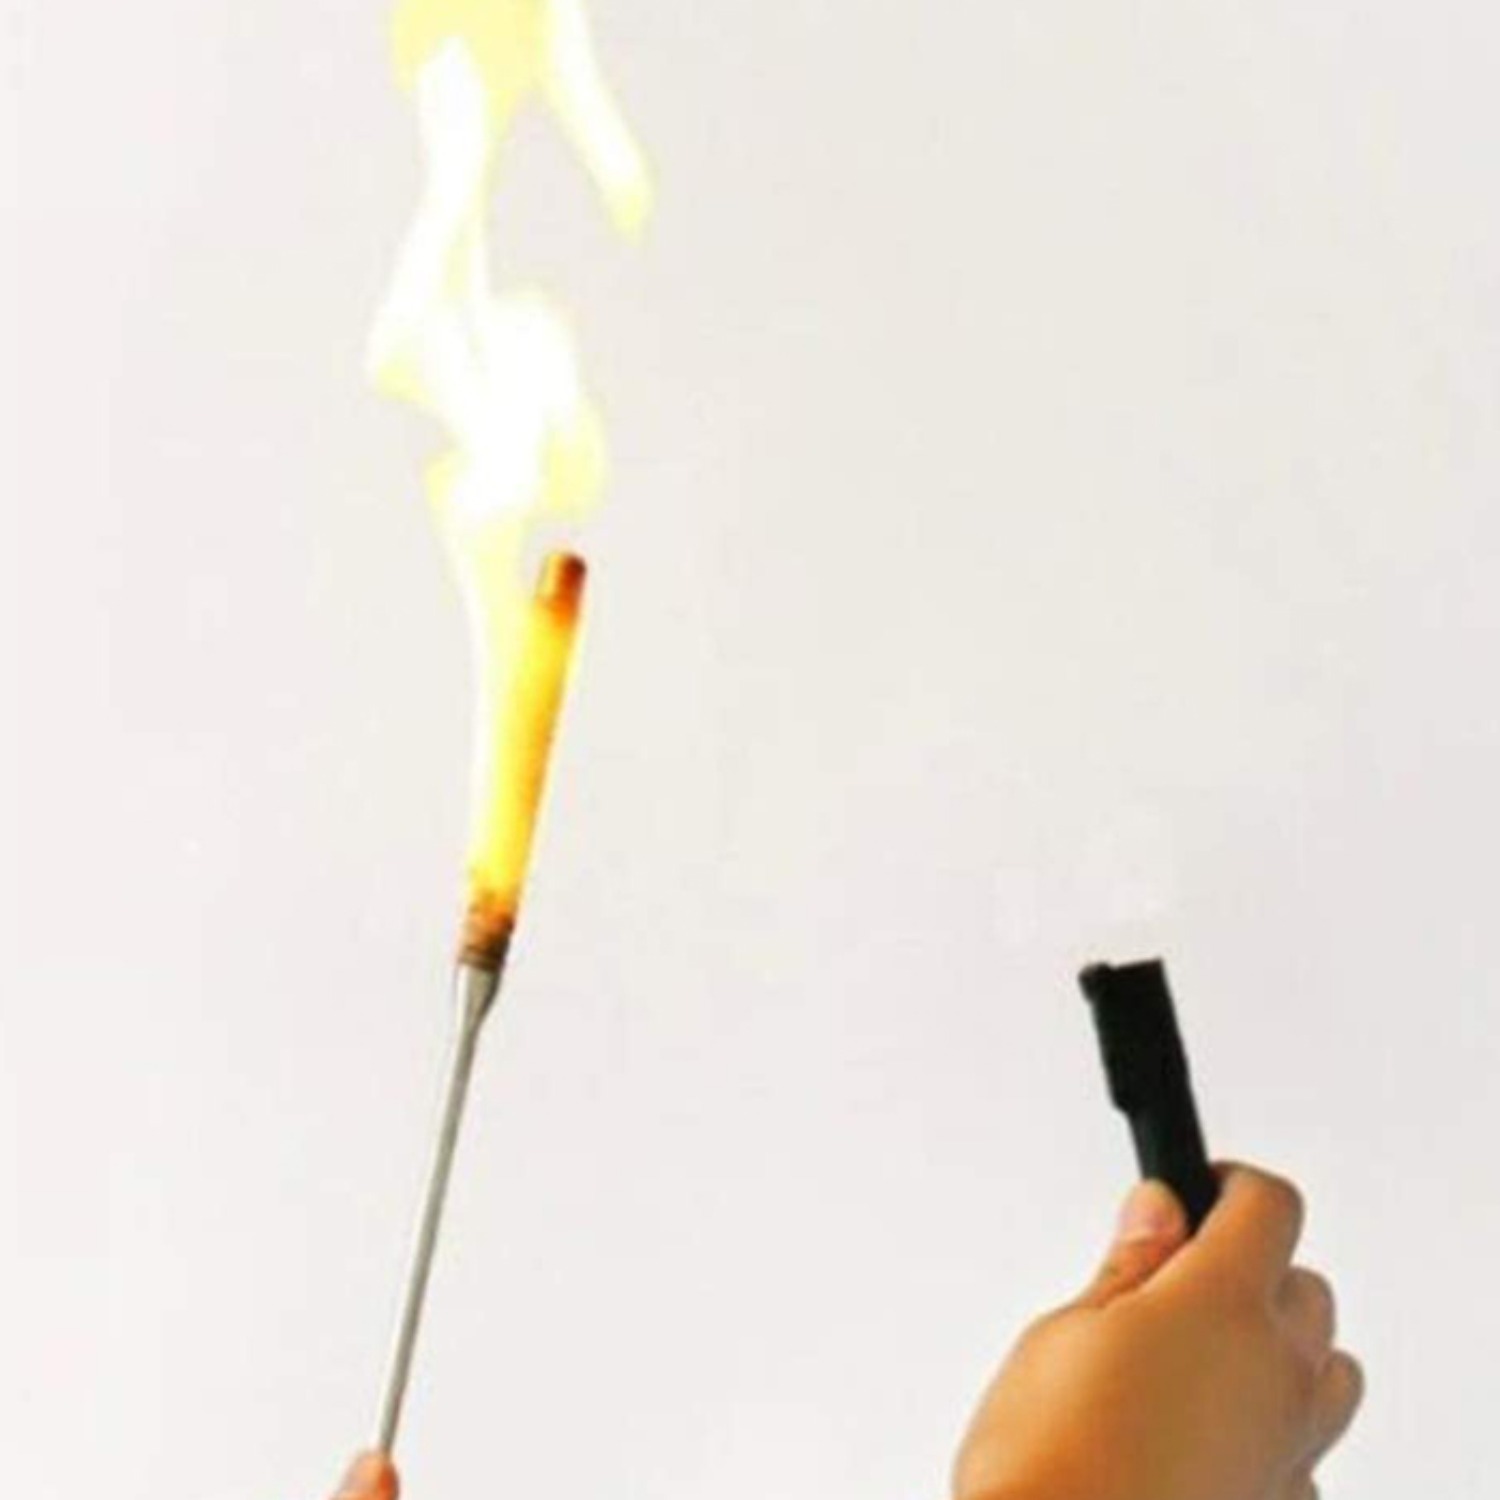 [파이어메탈케인 자동점화]Torch to appearing cane 저절로 불붙는 파이어메탈케인 입니다.